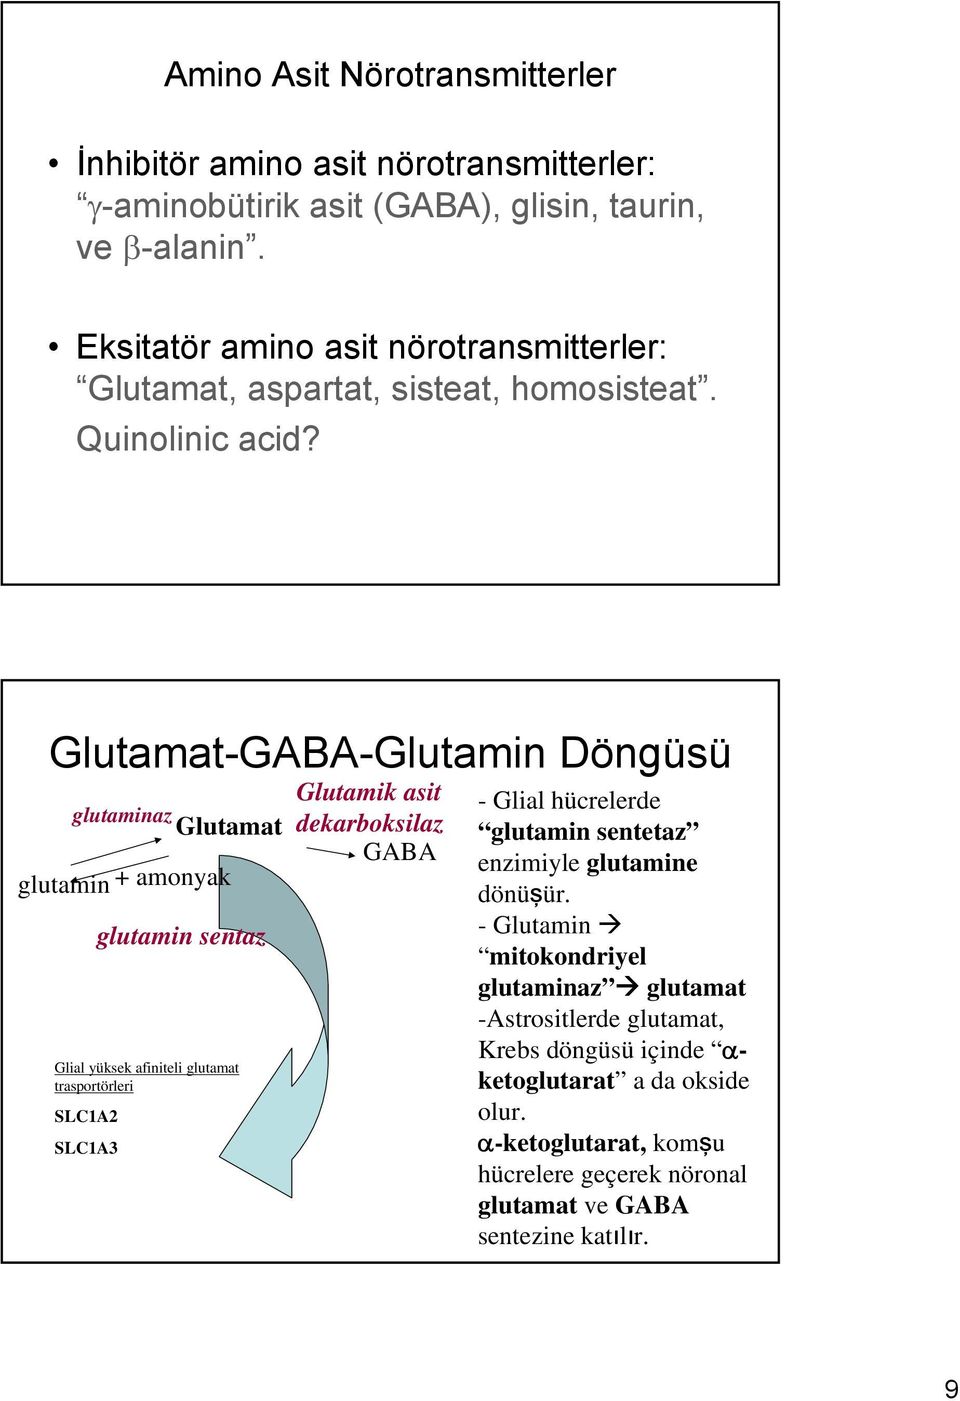 Glutamat-GABA-Glutamin Döngüsü glutaminaz Glutamat glutamin + amonyak glutamin sentaz Glial yüksek afiniteli glutamat trasportörleri SLC1A2 SLC1A3 Glutamik asit